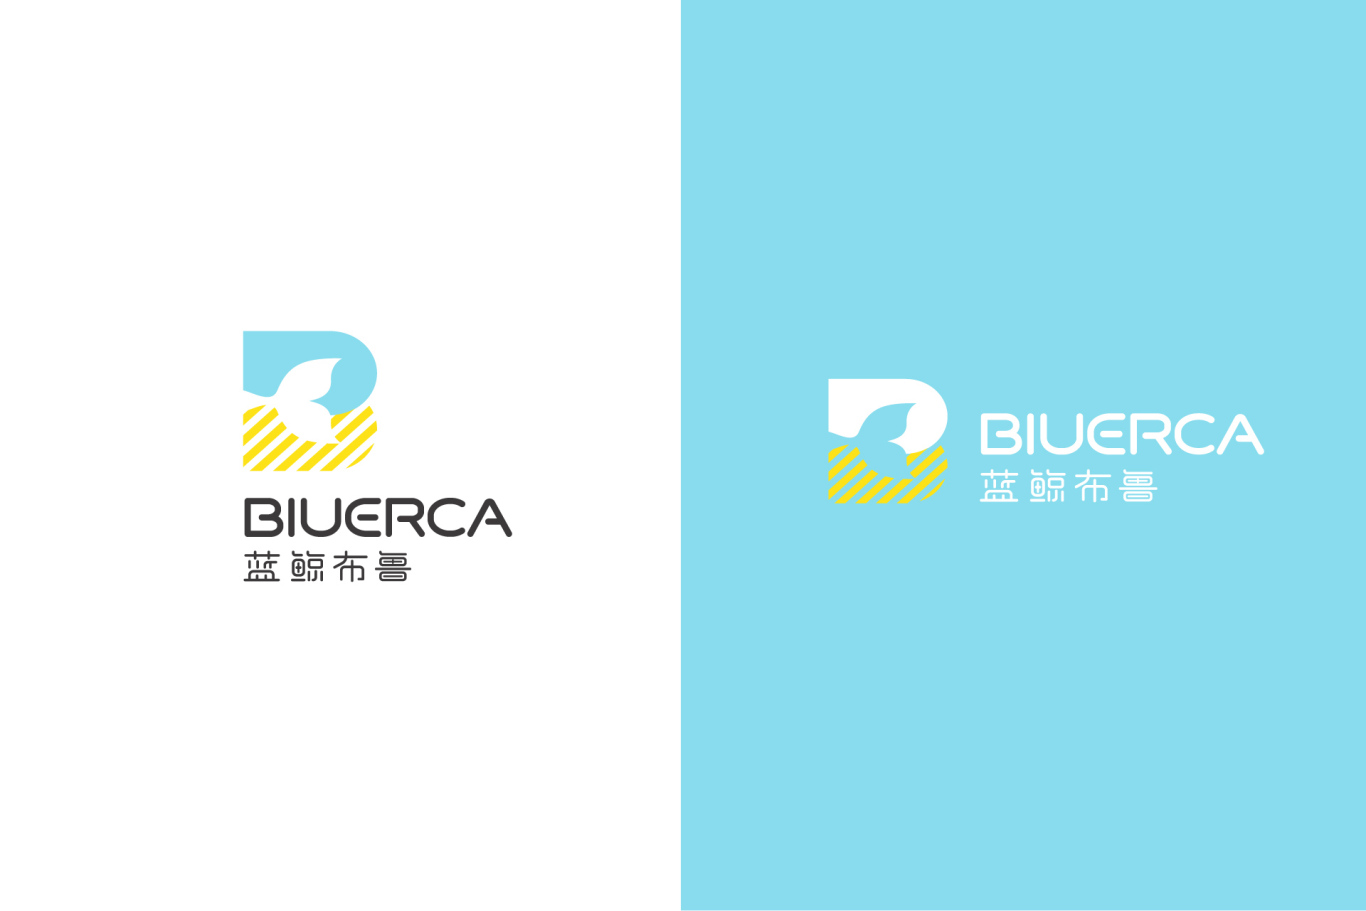 藍鯨布魯教育品牌Logo設計 vi設計圖0